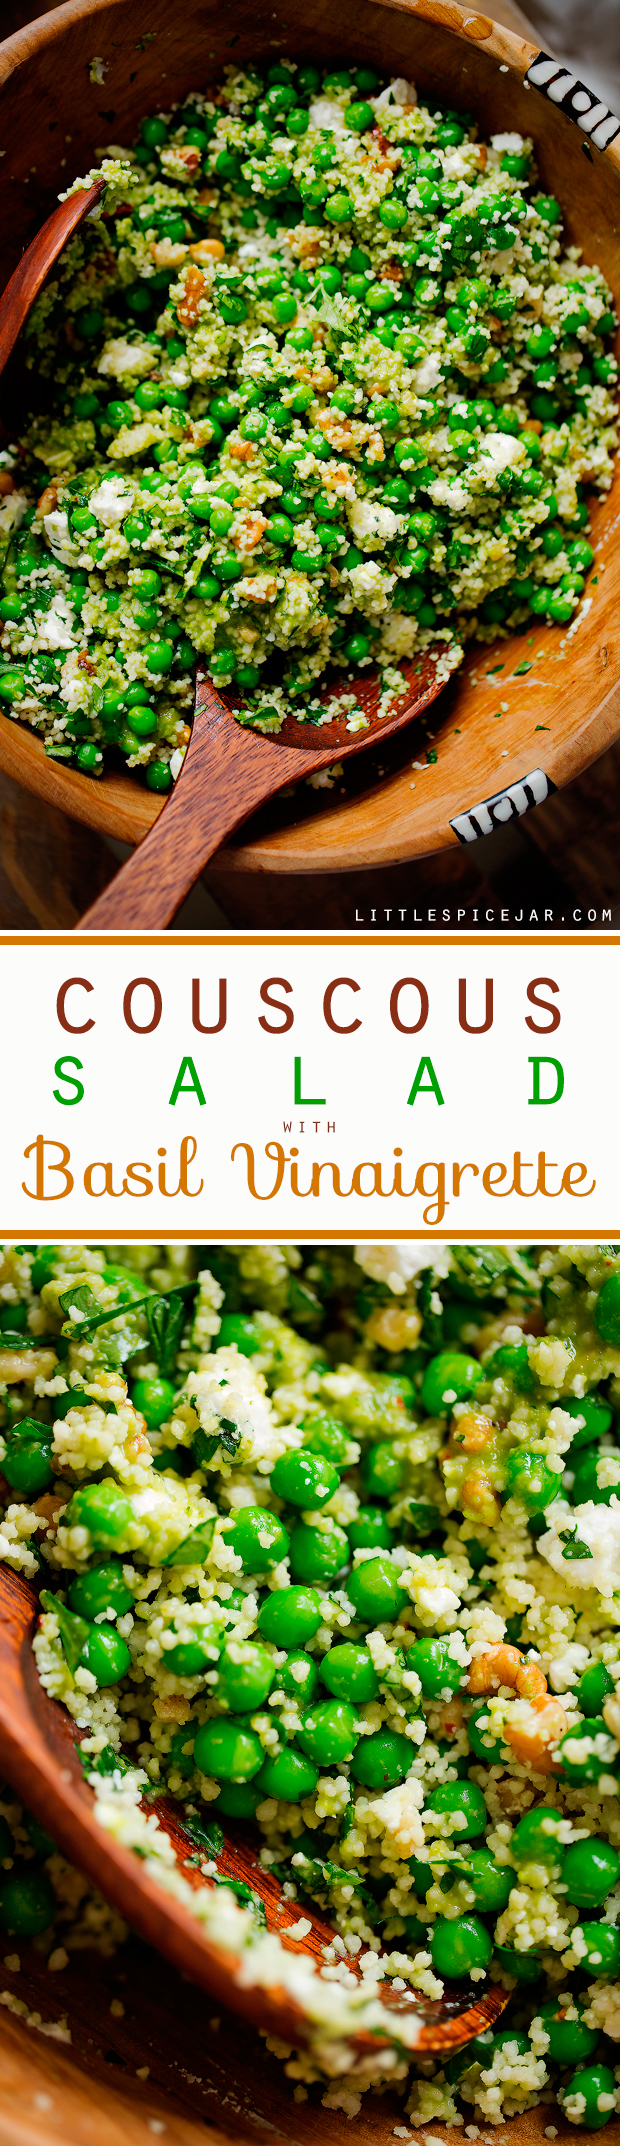 Spring-Couscous-Pea-Salad-with-Basil-Vinaigrette-8